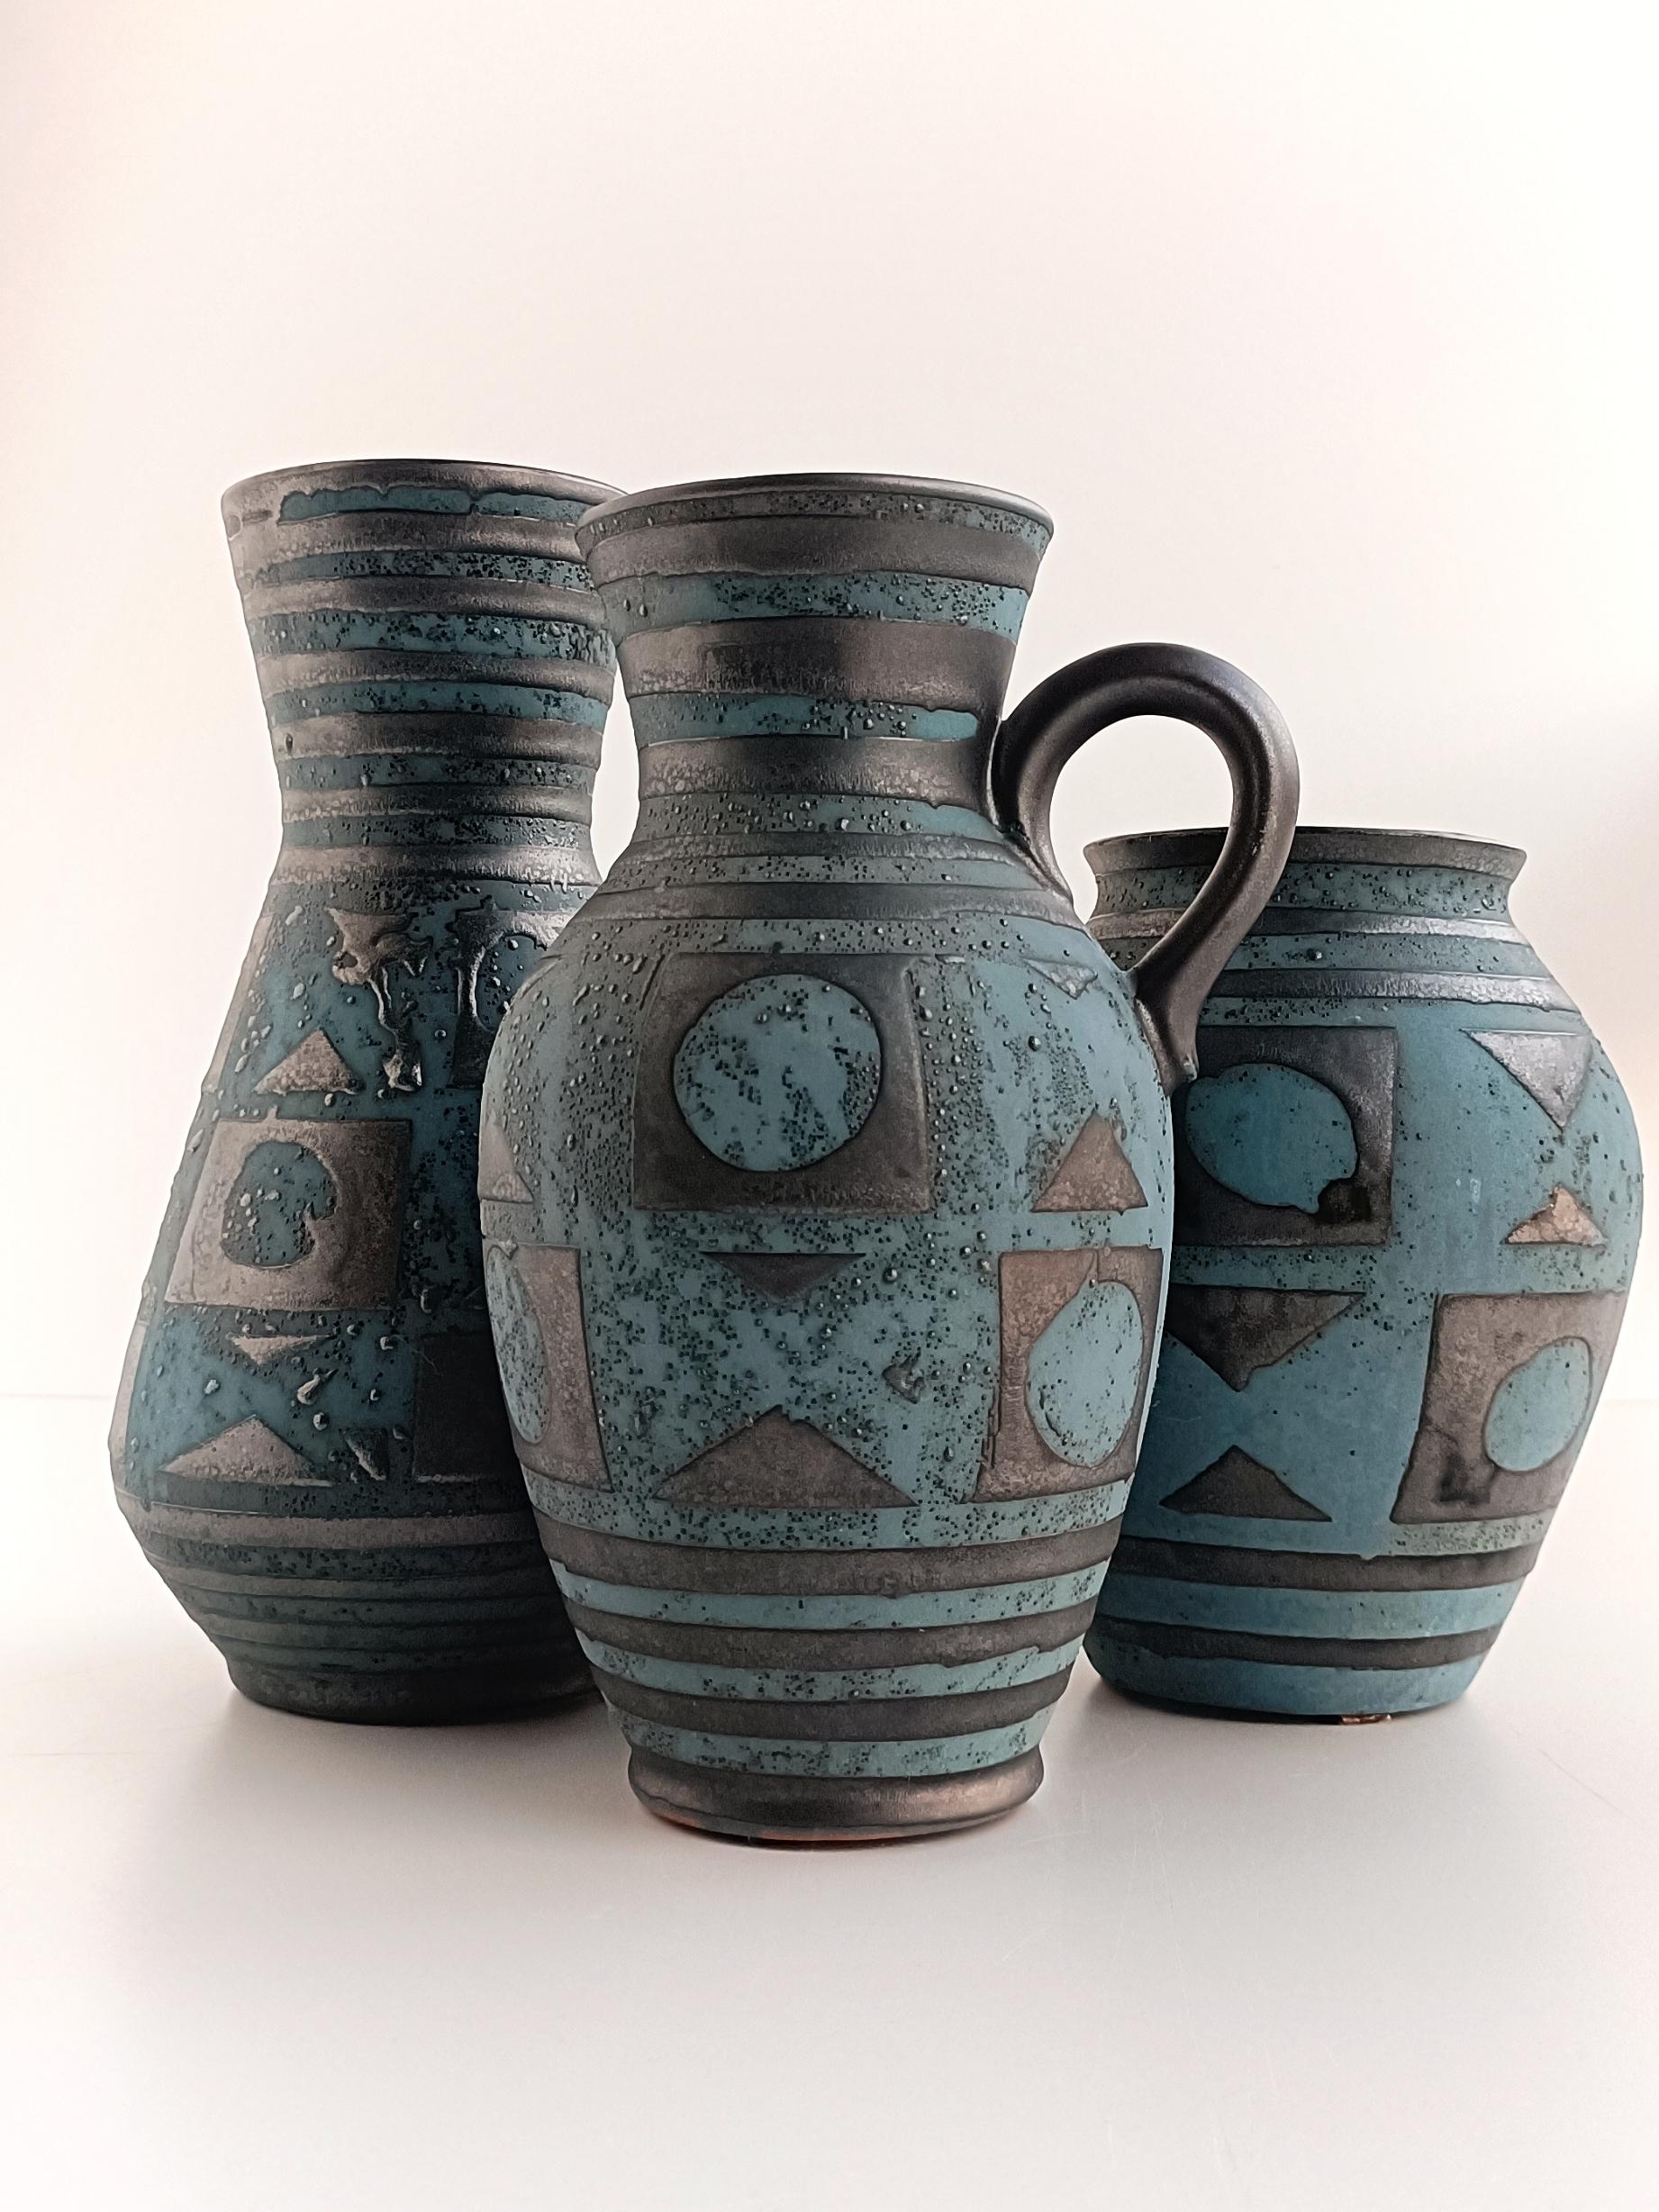 Ces vases Art Pottery Ankara Decor de Carstens Tönnieshoff, datant des années 1950, sont en effet des pièces exquises du design moderne du milieu du siècle. Carstens Tönnieshoff était un fabricant de céramique renommé basé en Allemagne de l'Ouest au